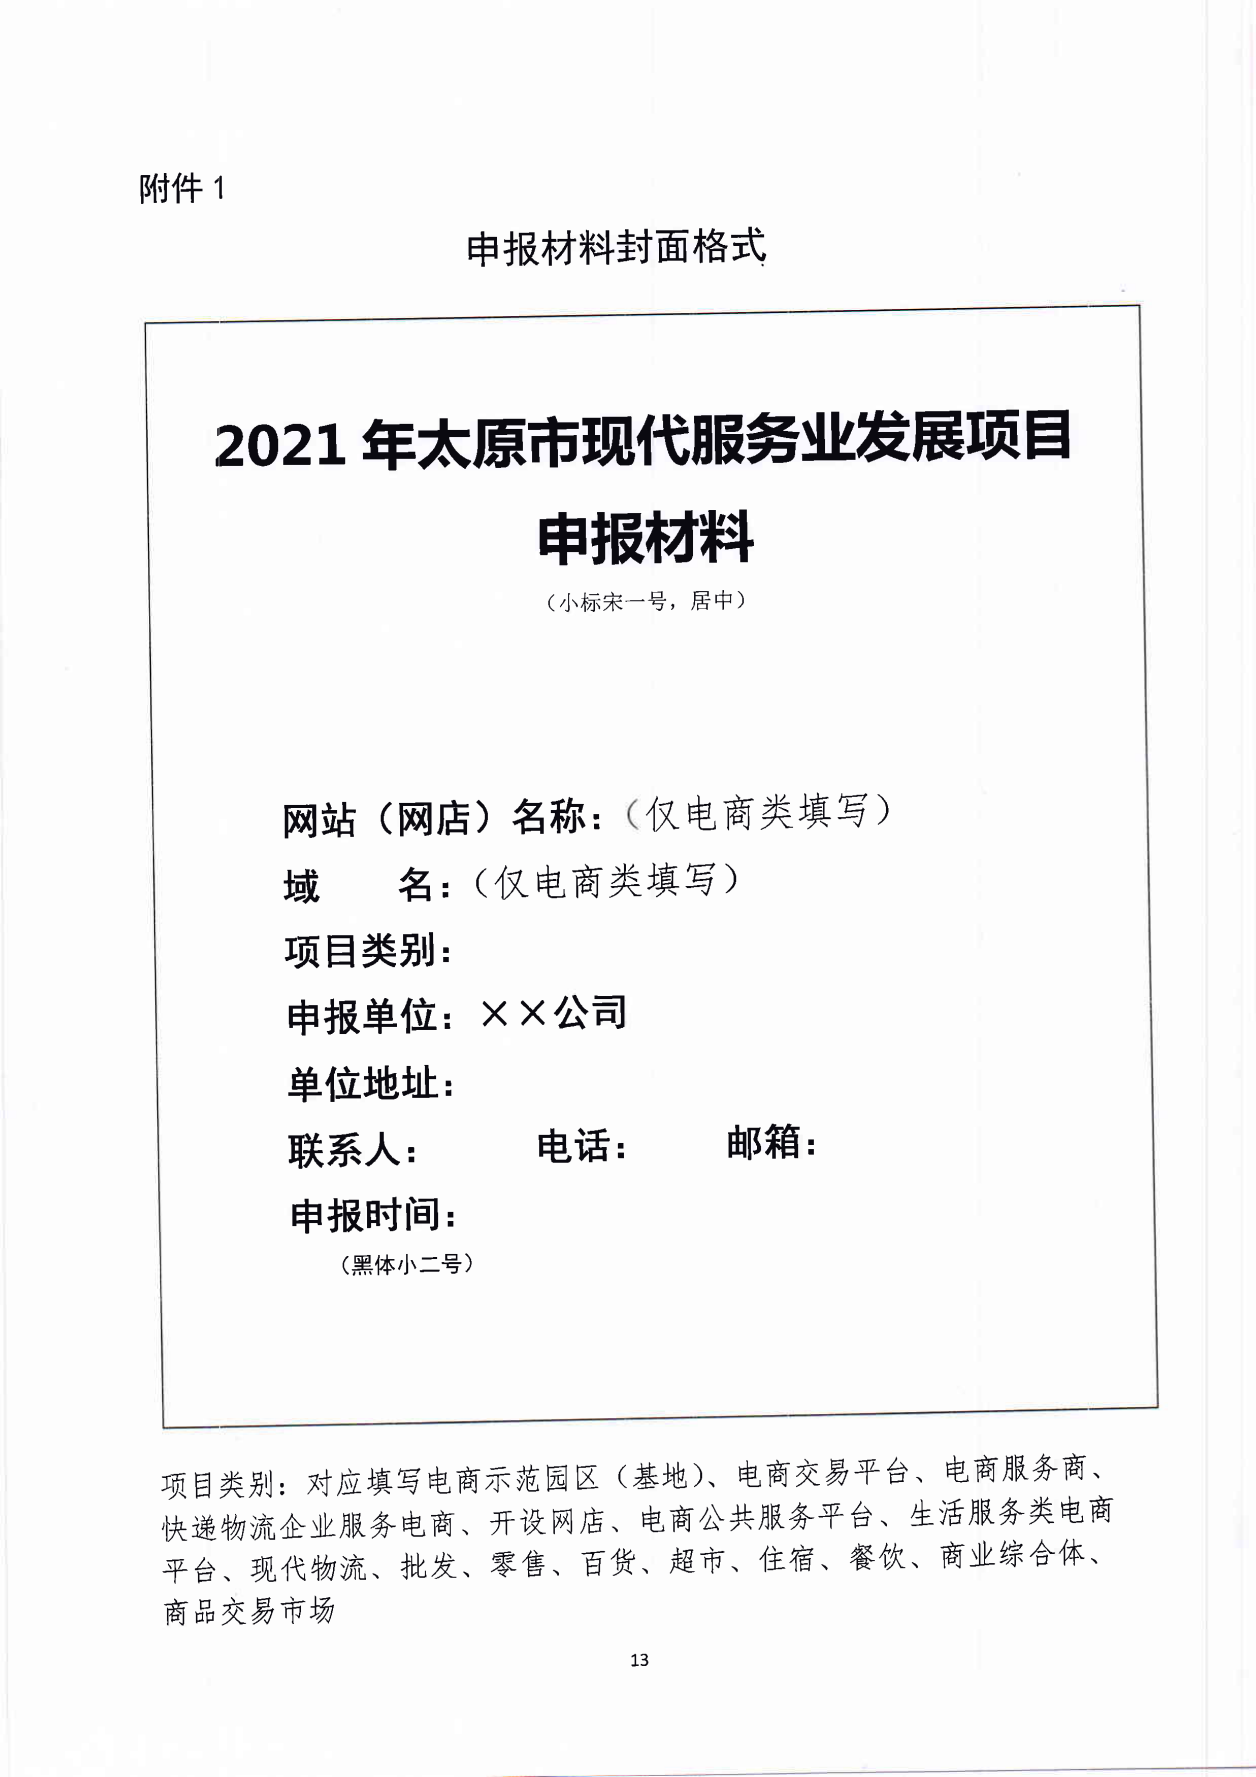 太原市商务局关于征集2021年现代服务业发展项目的通知(1)_12.png